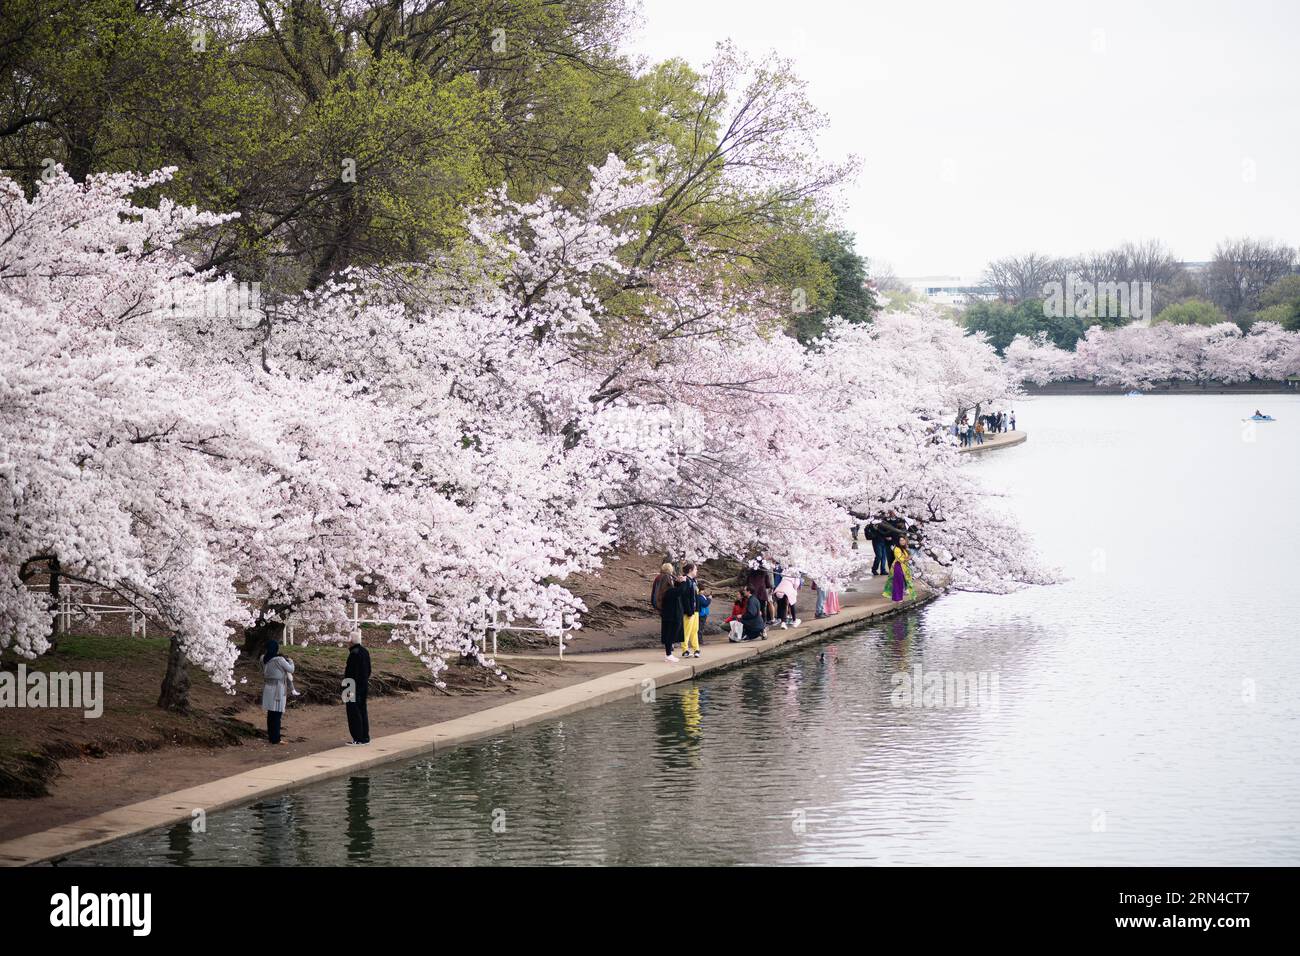 WASHINGTON DC, États-Unis — les cerisiers en pleine floraison enveloppent le bassin Tidal, marquant le début du printemps dans la capitale nationale. Cet événement annuel attire des milliers de personnes, symbolisant l'amitié durable entre les États-Unis et le Japon, un cadeau de Tokyo en 1912. Banque D'Images